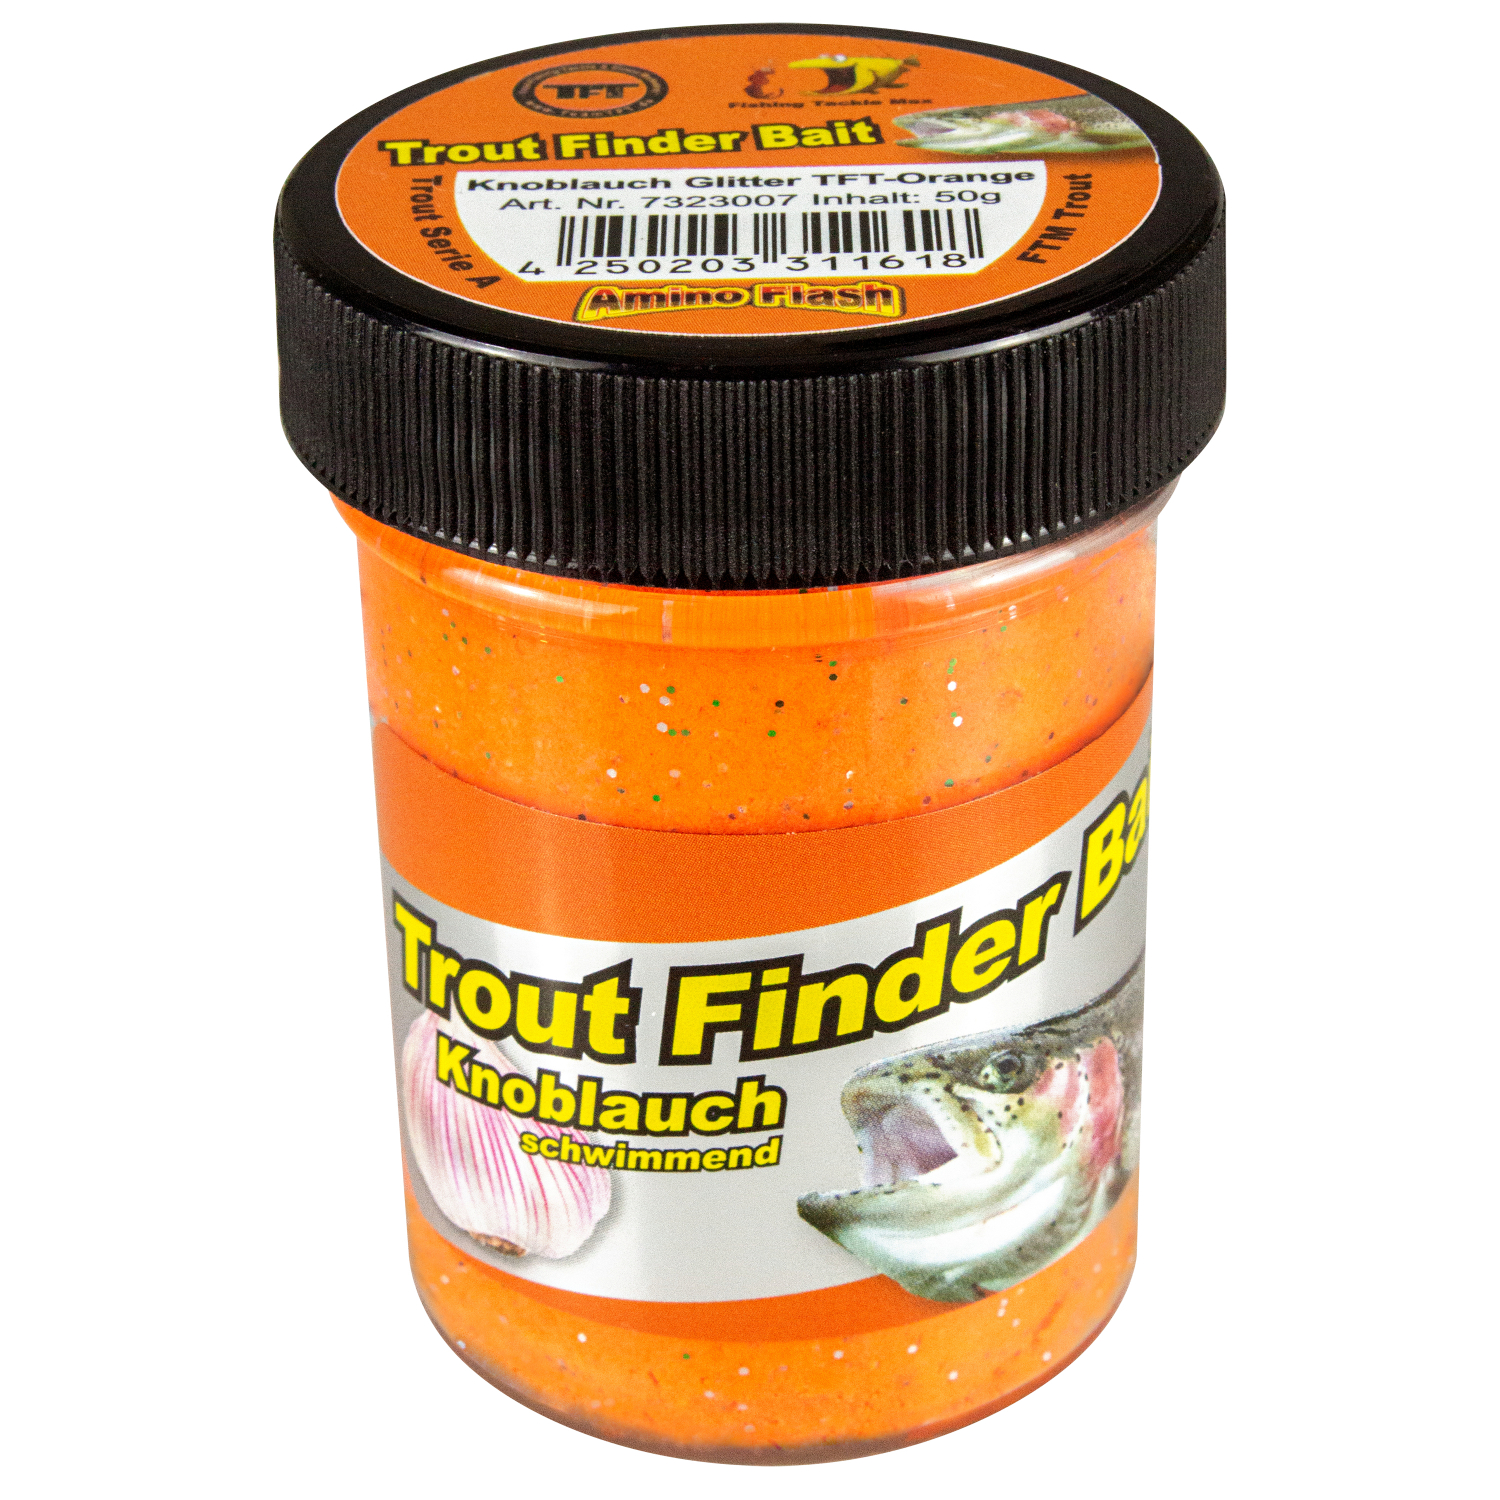 FTM Forellenteig Trout Finder Bait schwimmend (TFT-orange, Knoblauch) 